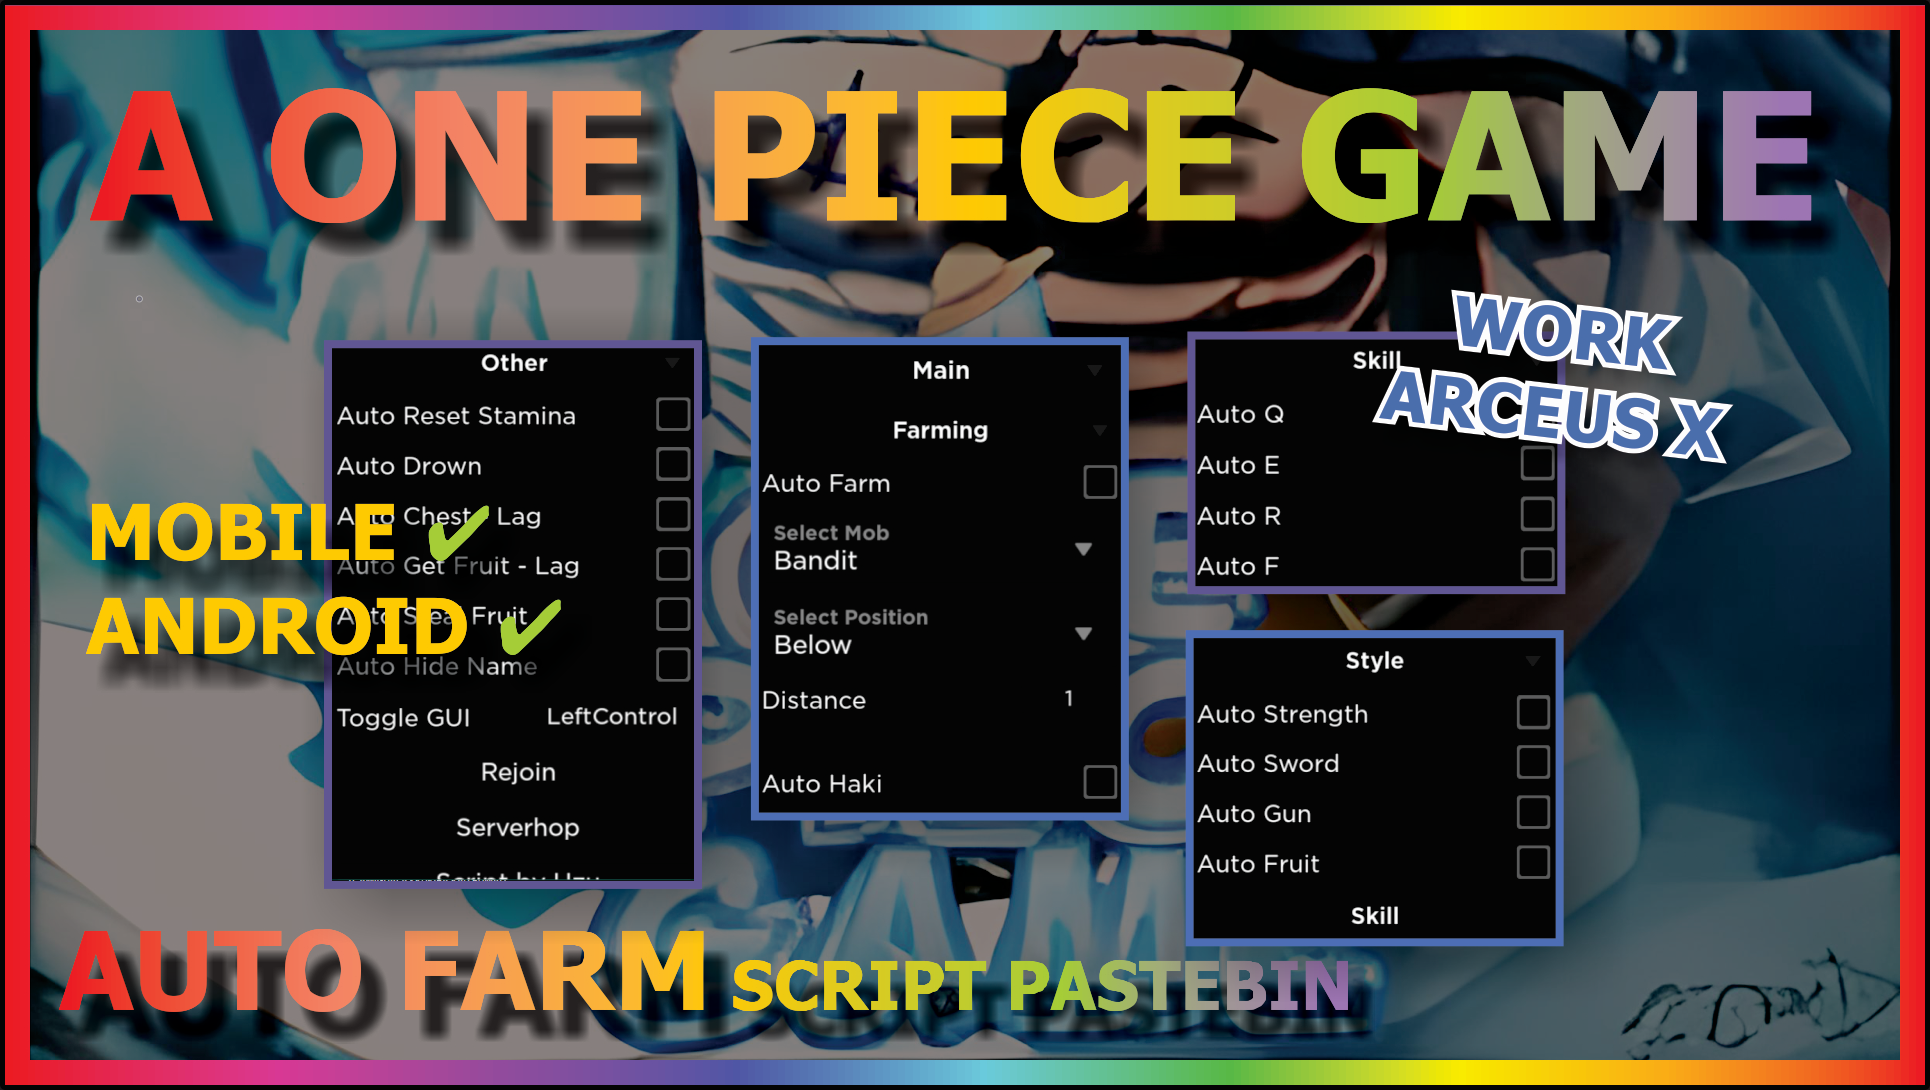 A One Piece Game Script - LeadMarker - AUTOFARM, FRUIT HOPPER & MORE!